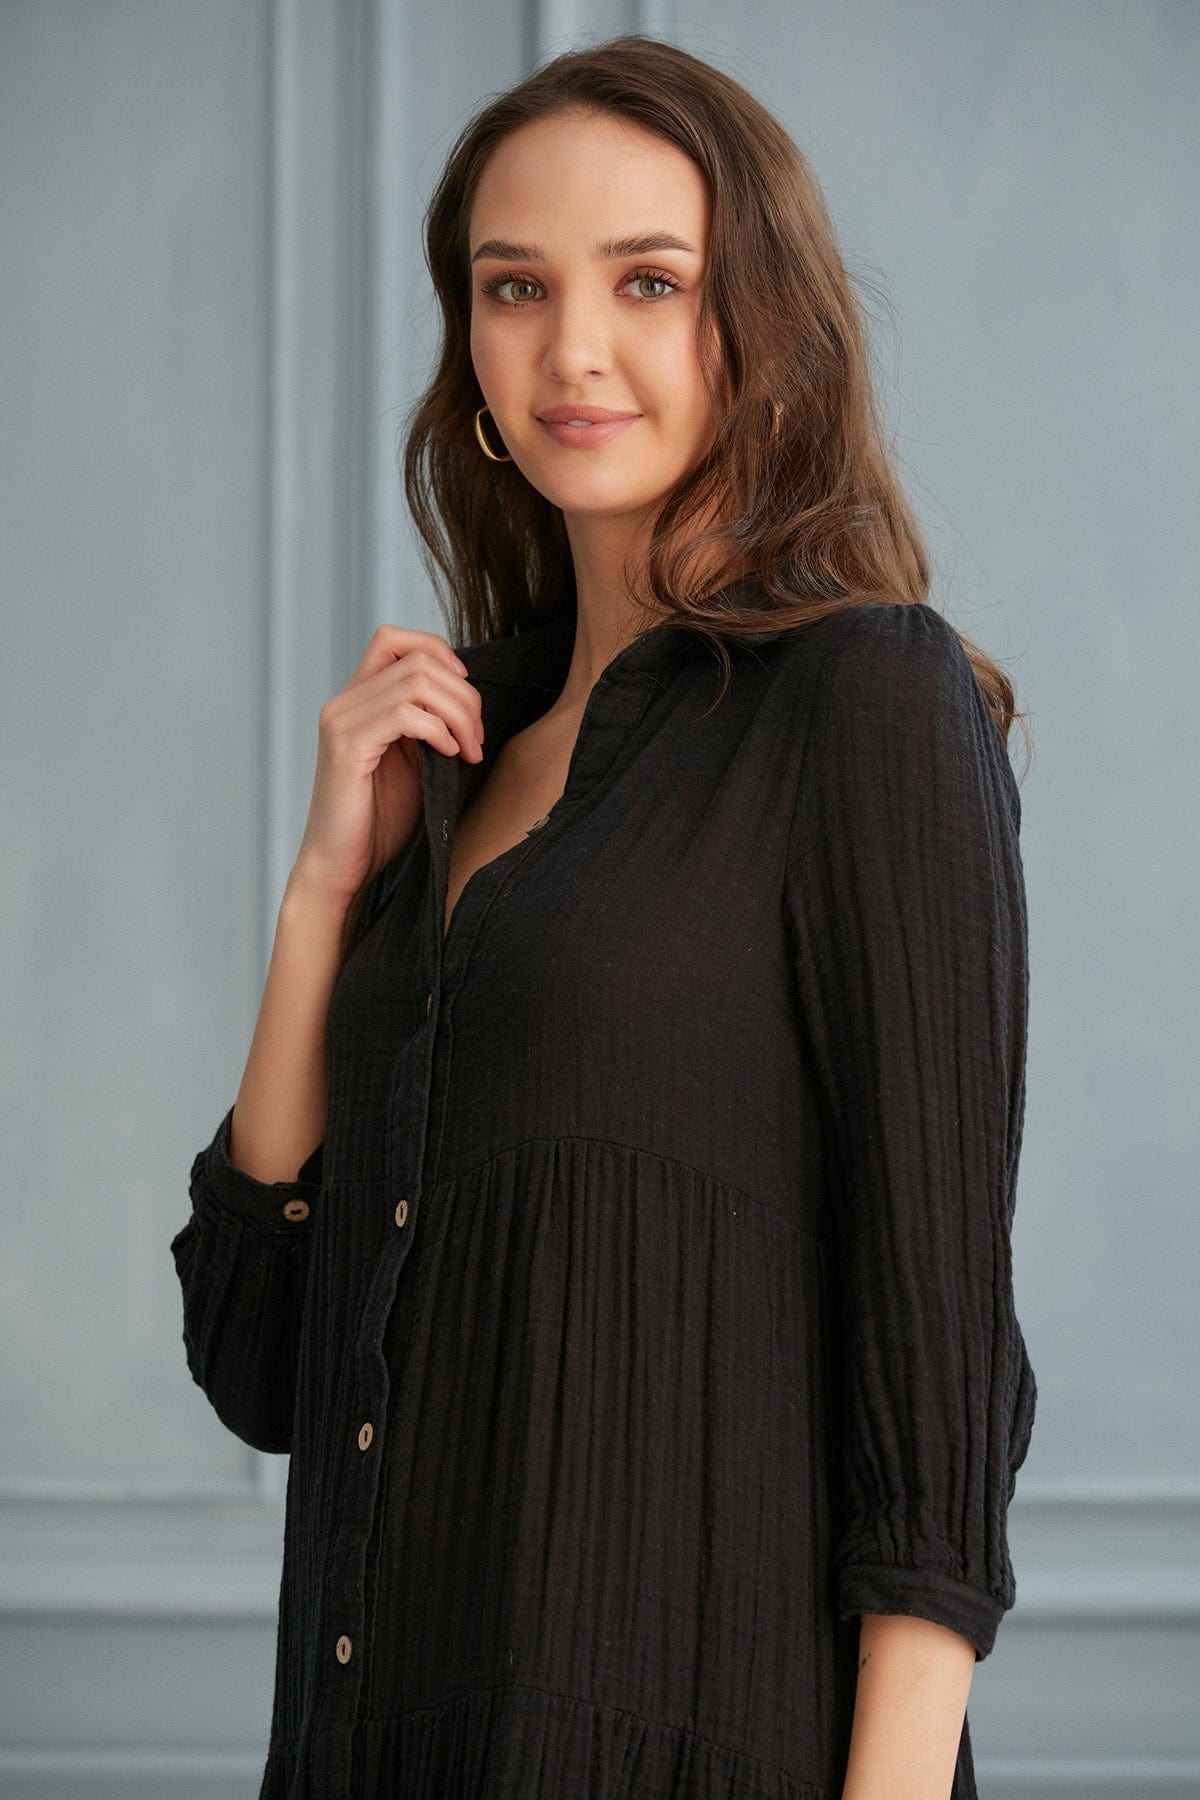 Begonville Gömlek Elbise Maya Uzun Gömlek Elbise - Siyah